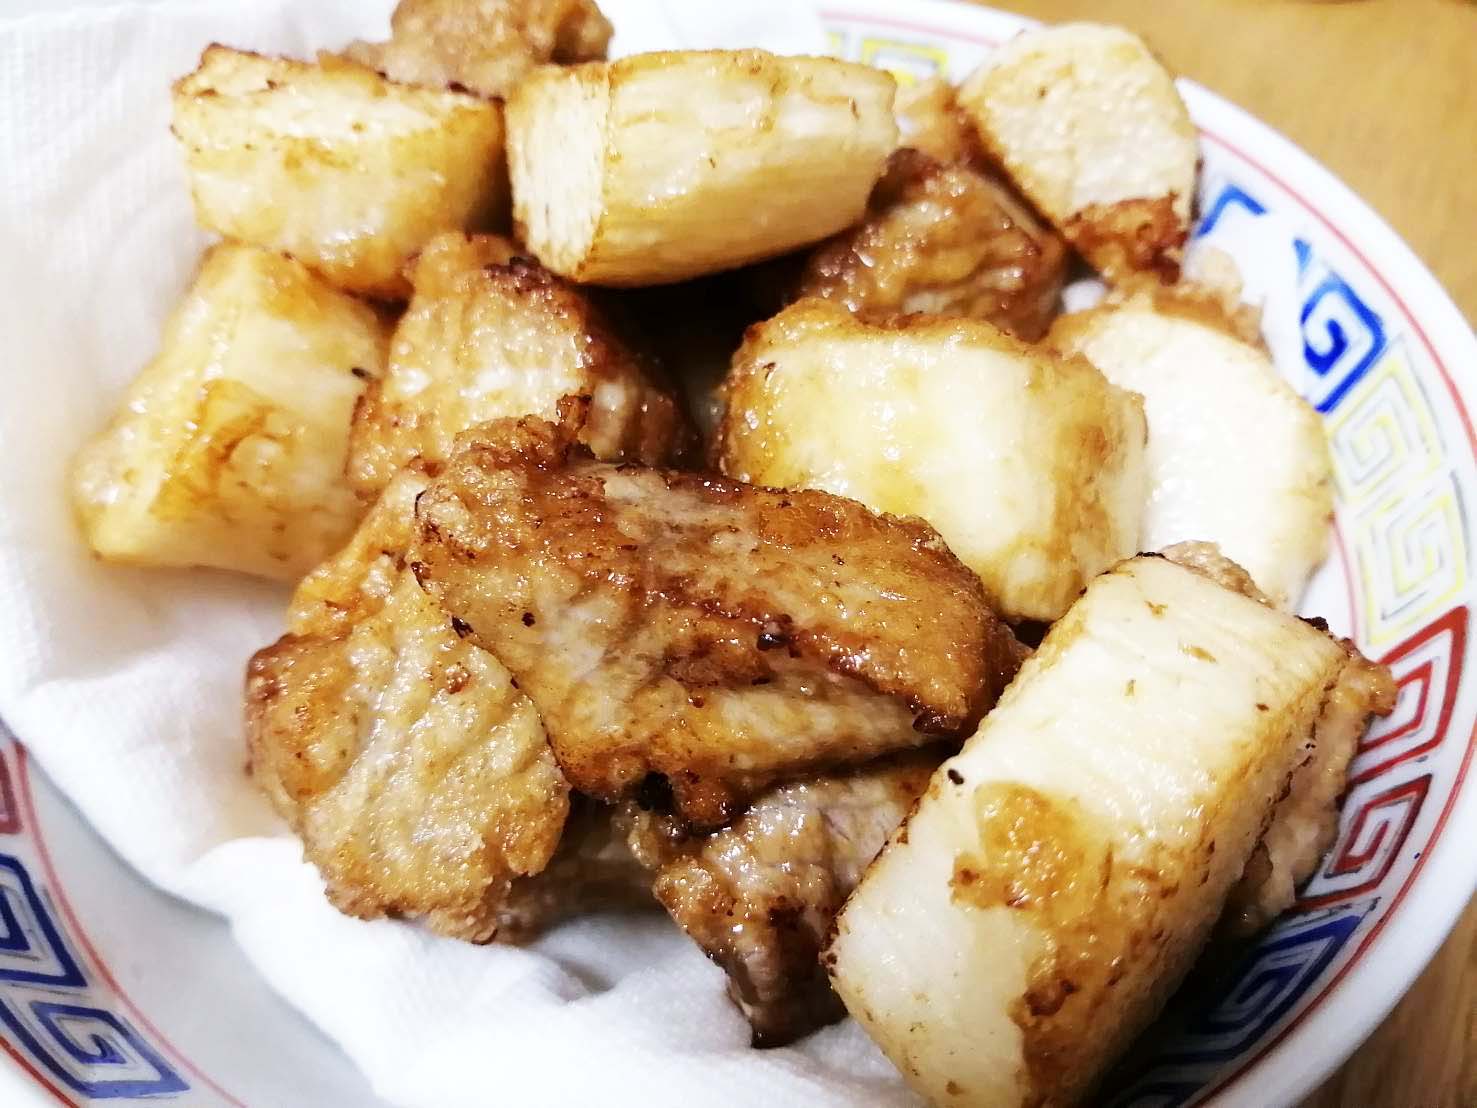 もうかさめ 長芋の竜田揚げをつくる もうかさめは2切れ0円と安いのに美味い レシピ プラ子のお楽しみエッセイ